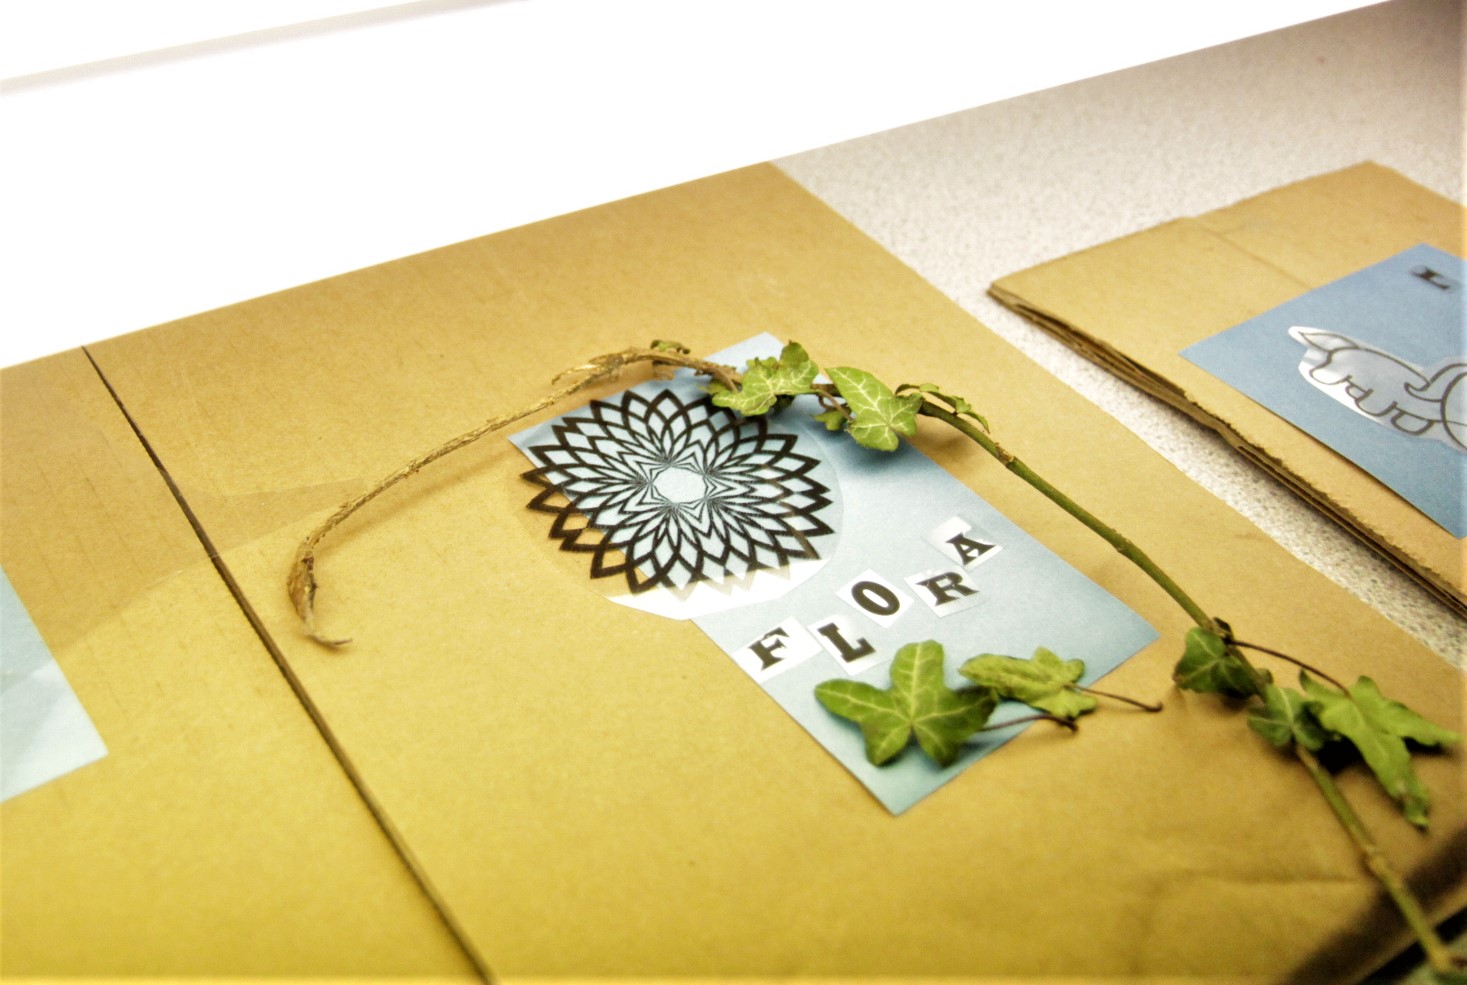 Cyanotype Photogram Greeting Card Making Kit: 4 pack